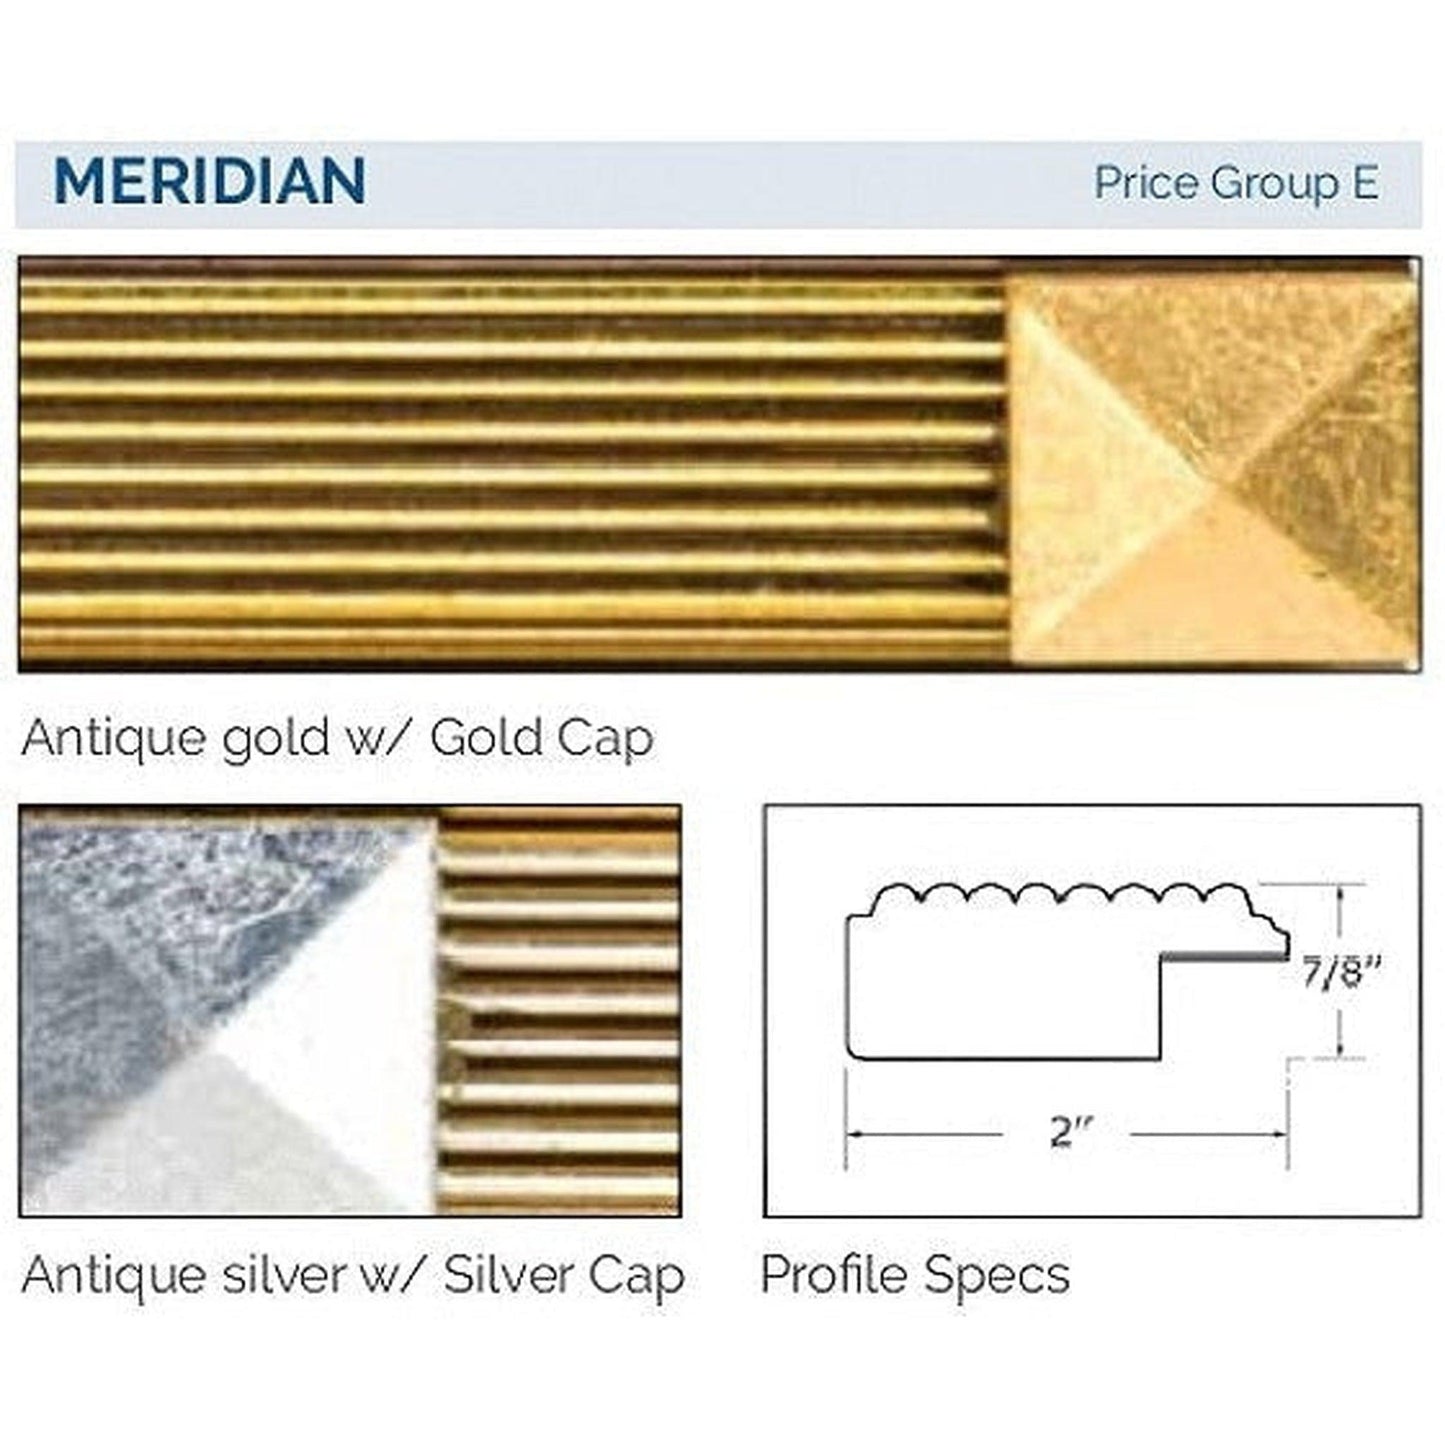 Afina Signature 63" x 36" Meridian Antique Gold With Antique Gold Caps Recessed Four Door Medicine Cabinet With Beveled Edge Mirror